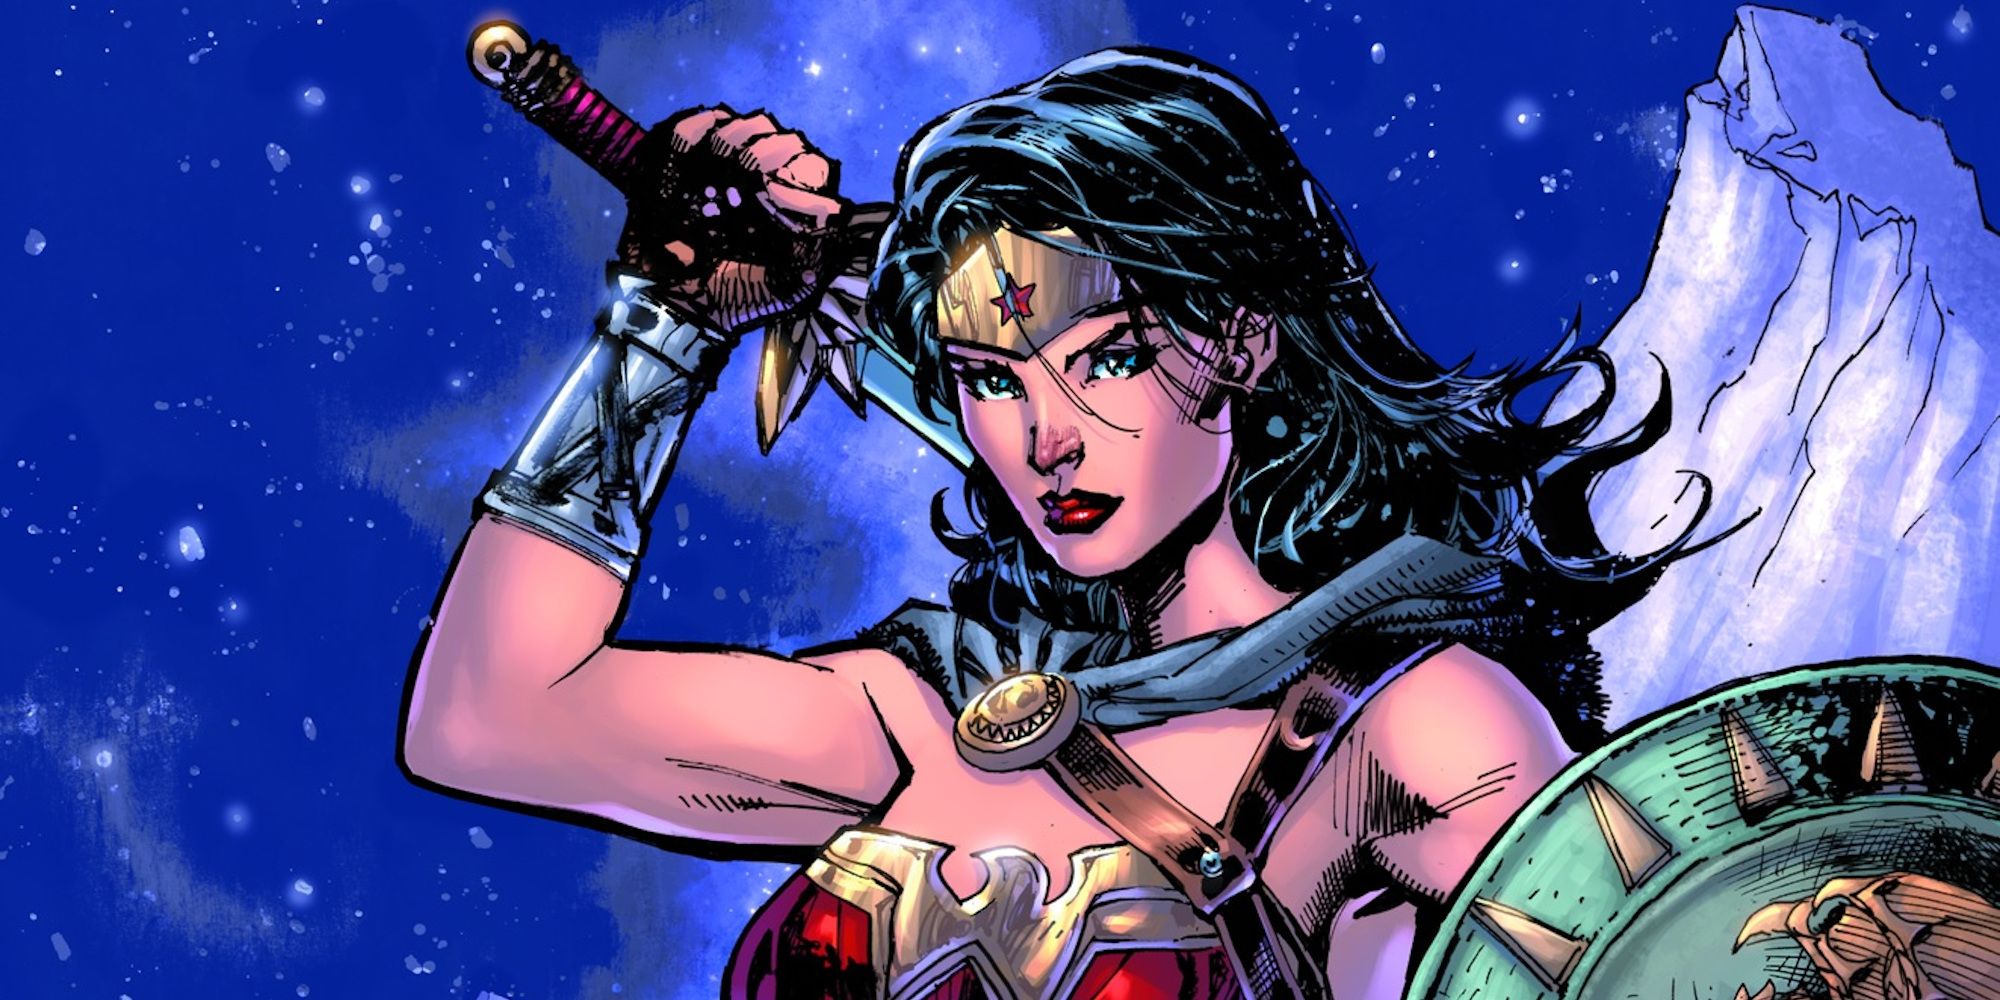 Wonder Woman #759 Jim Lee variant cover header